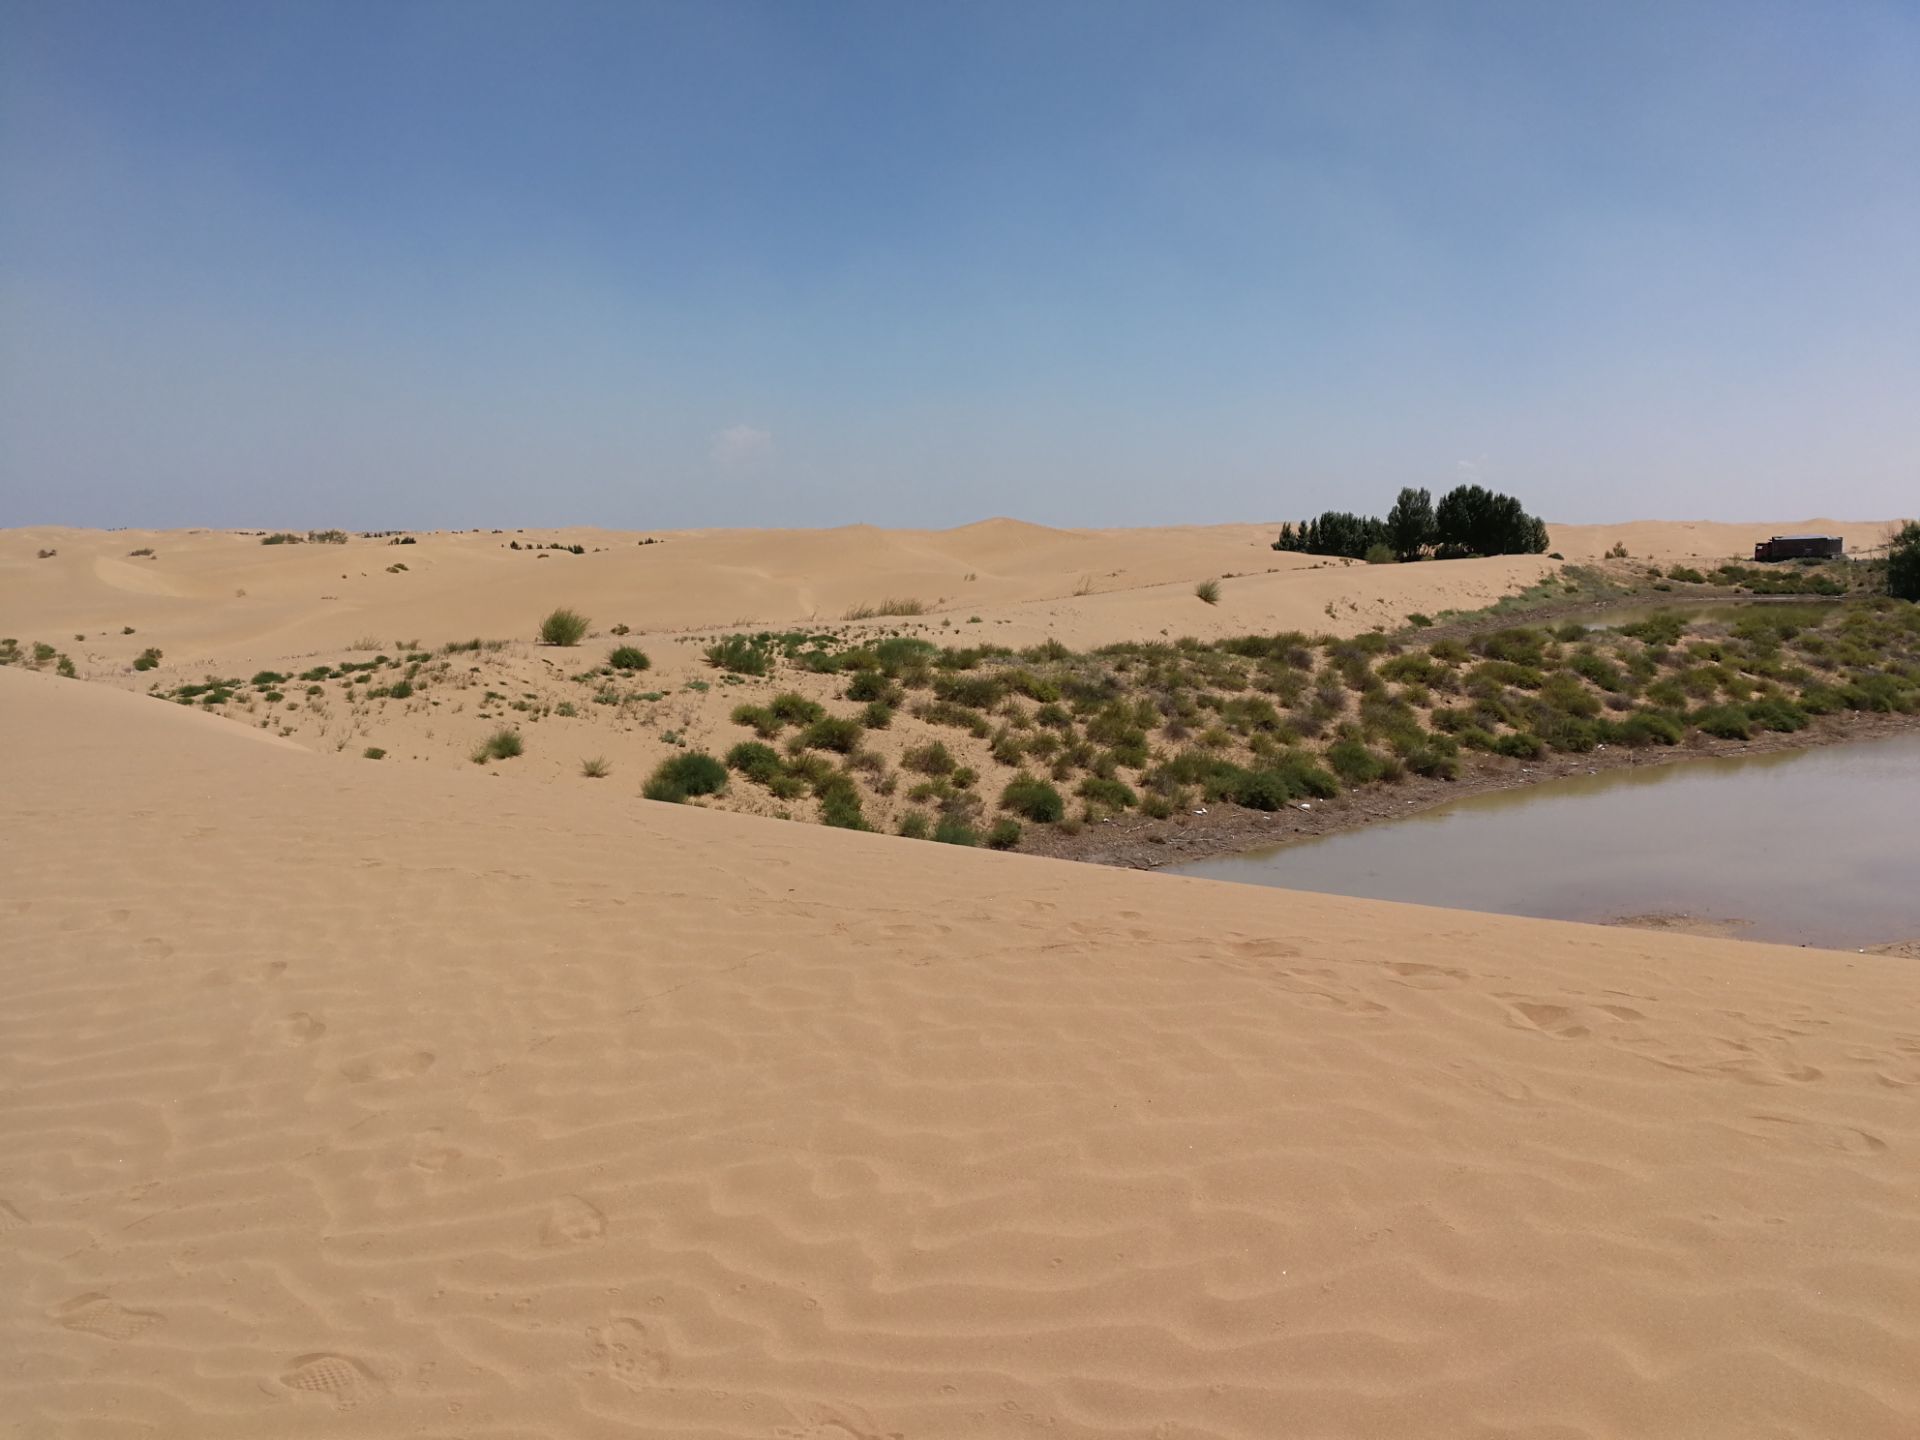 库布齐沙漠-响沙湾-七星湖之旅 - 库布齐沙漠游记攻略【携程攻略】